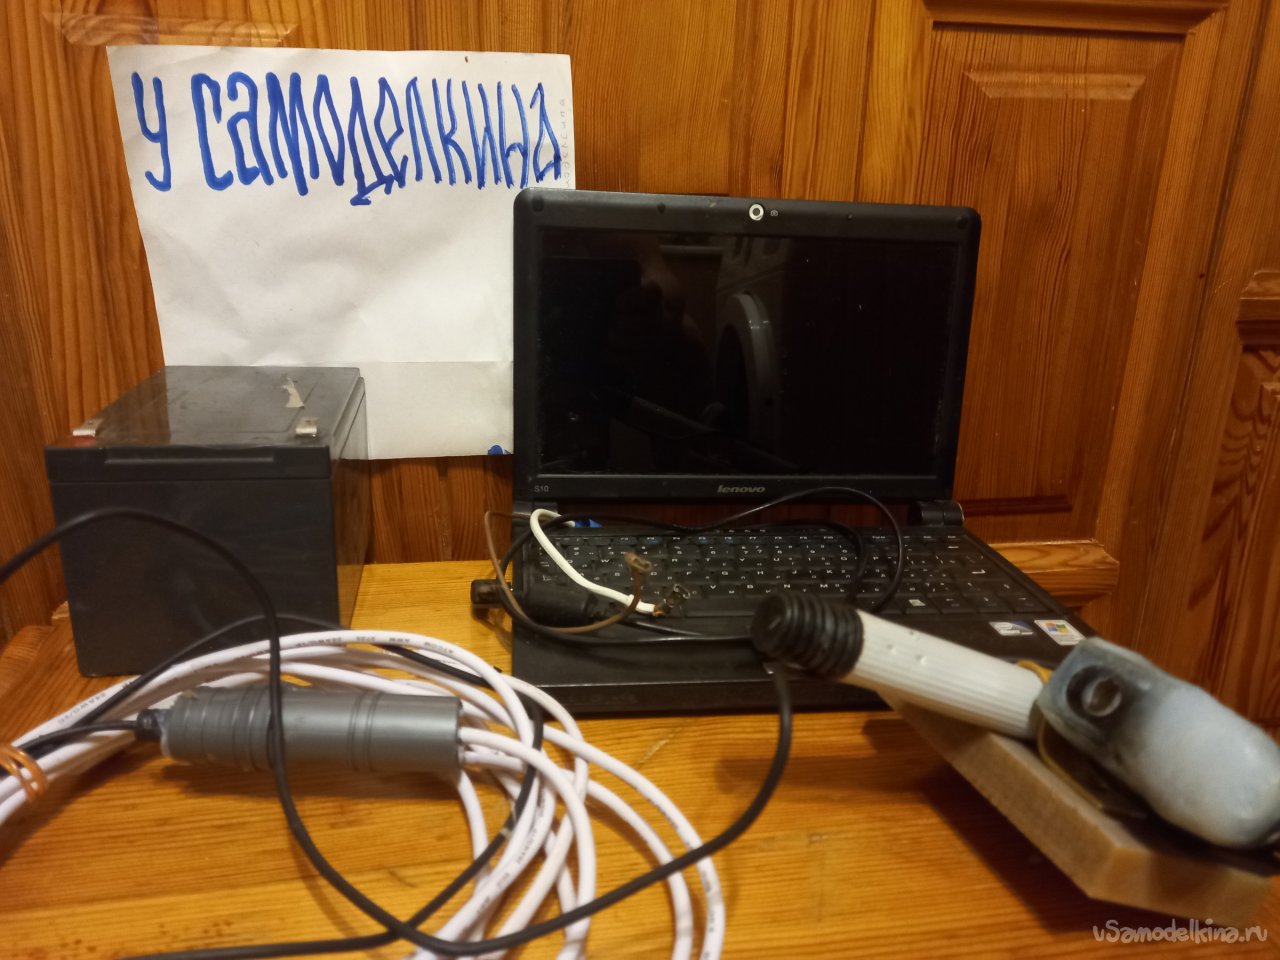 Подводные камеры для рыбалки Lucky видеоудочки камеры Лаки купить в Украине, цена, отзывы